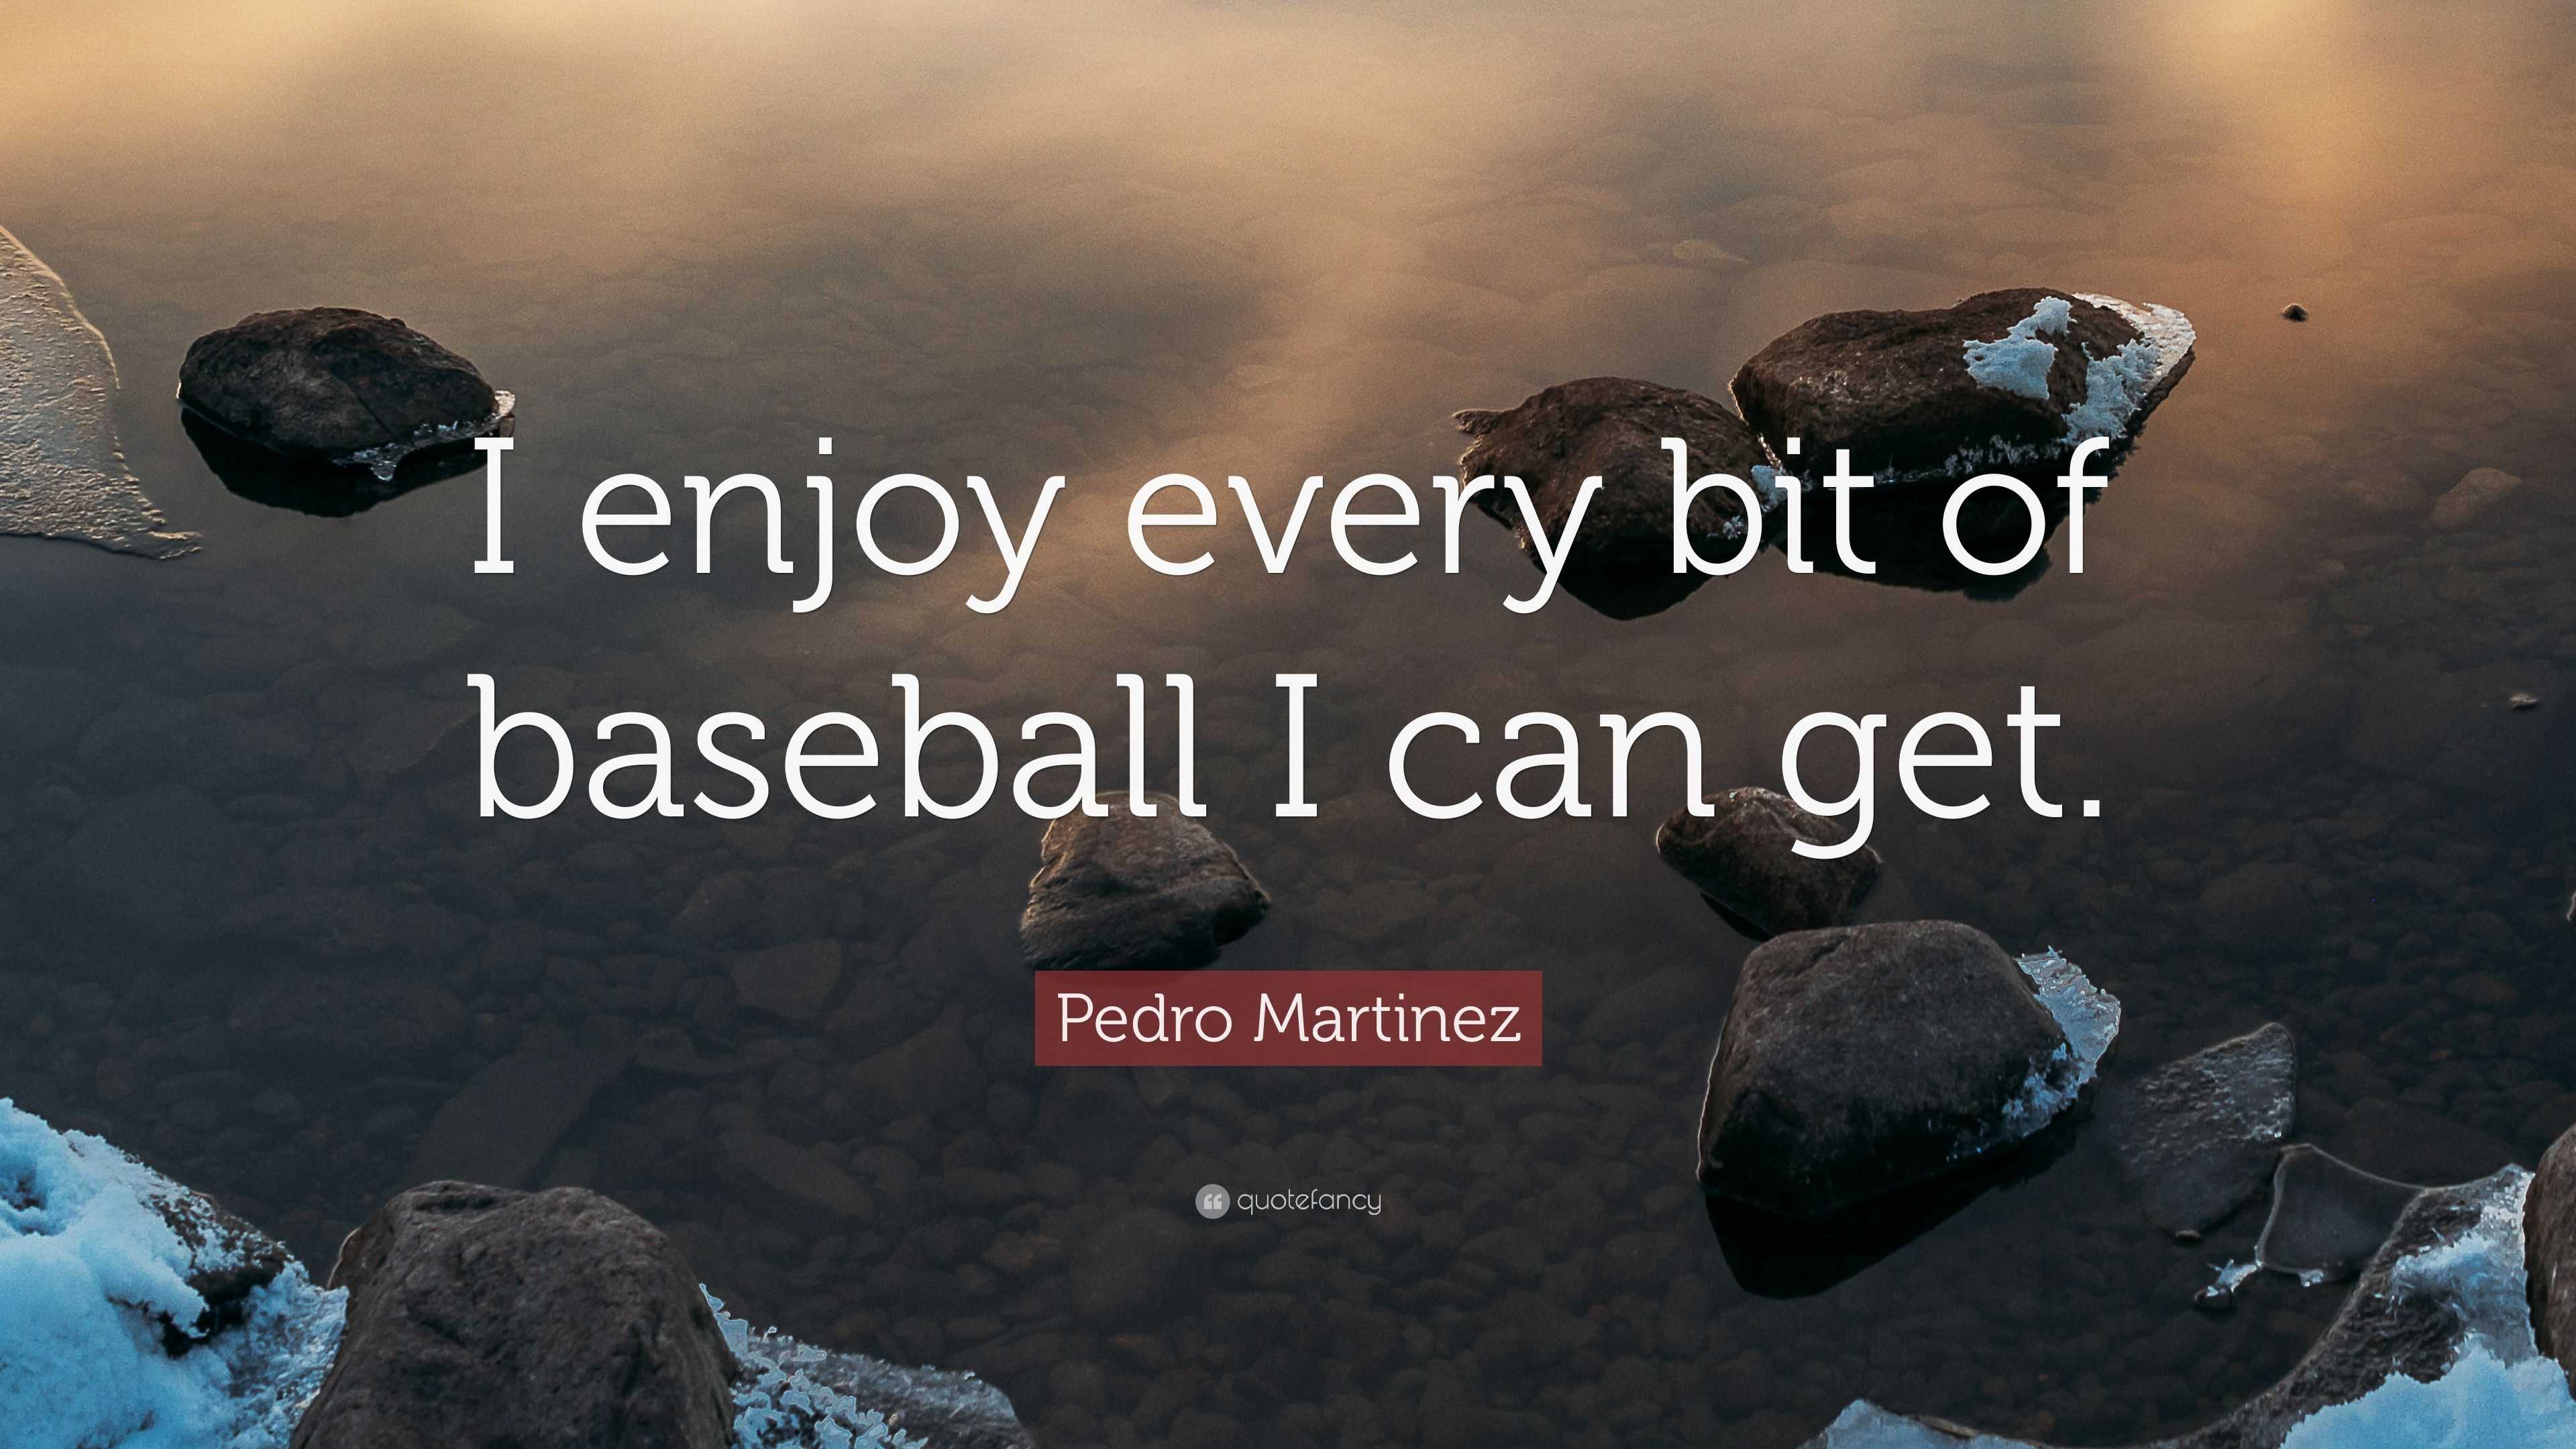 Pedro Martinez Quotes. QuotesGram